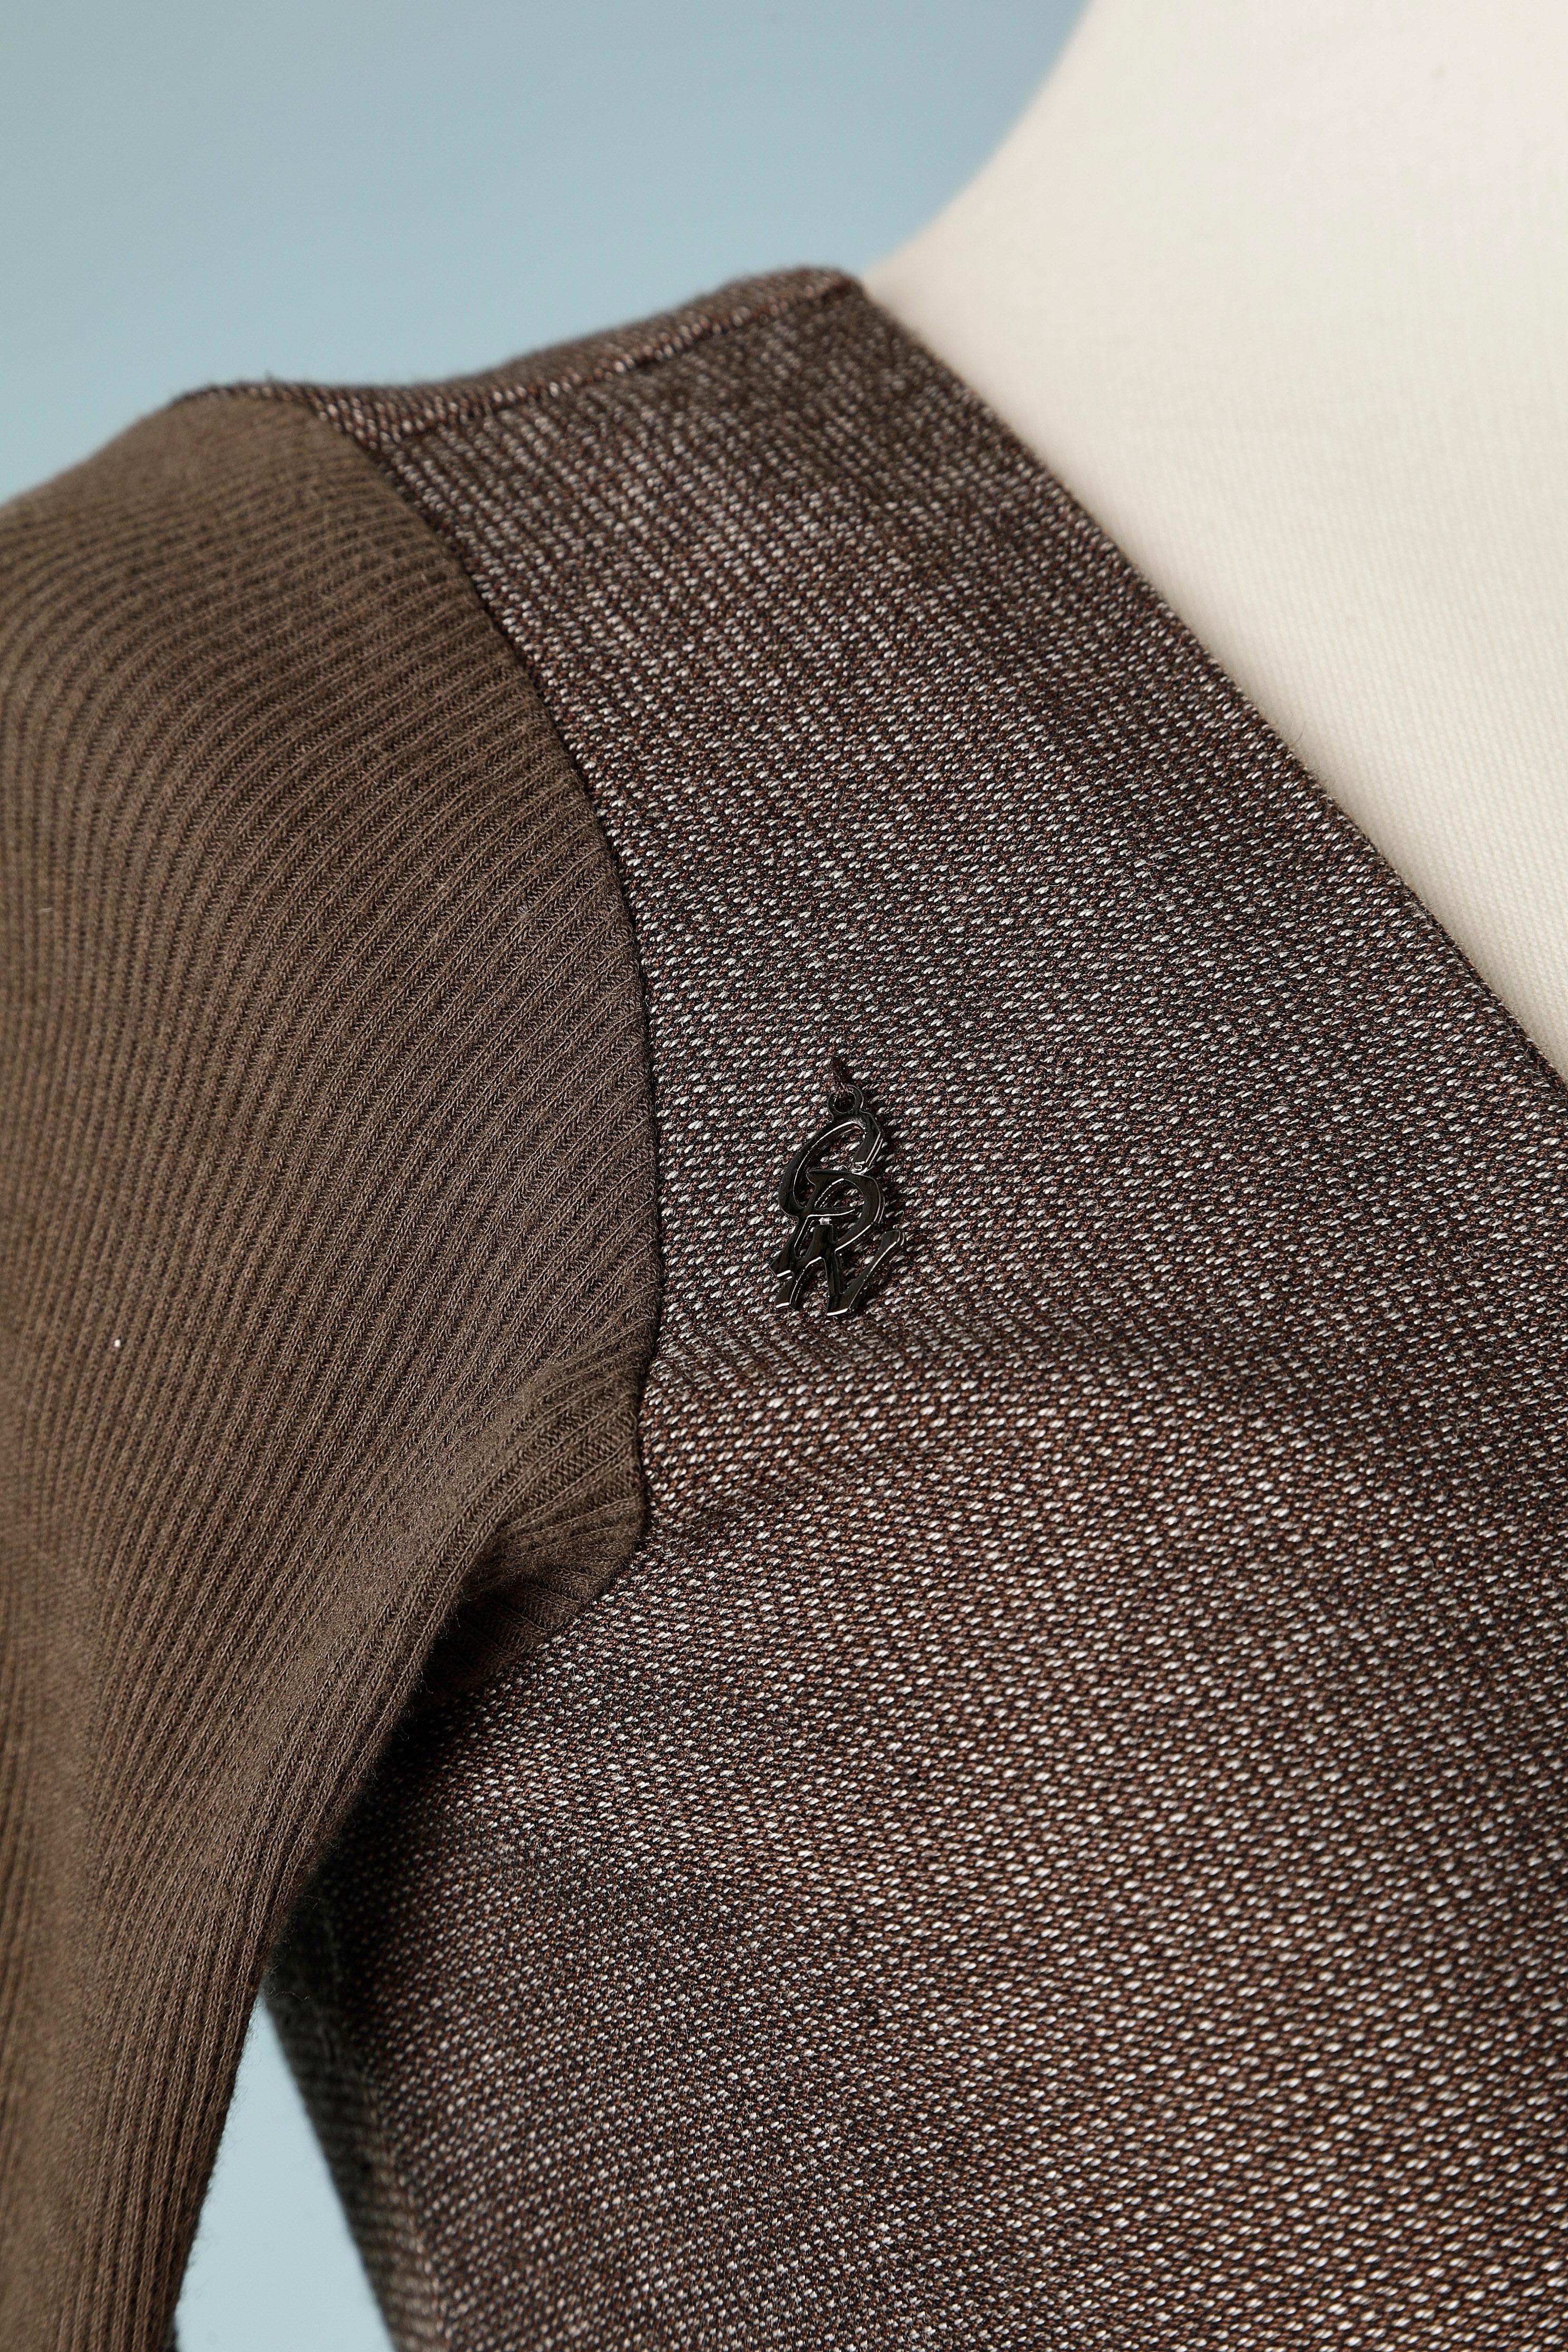 Robe en jersey marron avec des volants de dentelle sur le milieu du devant. Petite marque CDN attachée sur l'épaule droite. Composition du tissu : 65% polyester, 33% rayonne, 2% spandex
Taille S